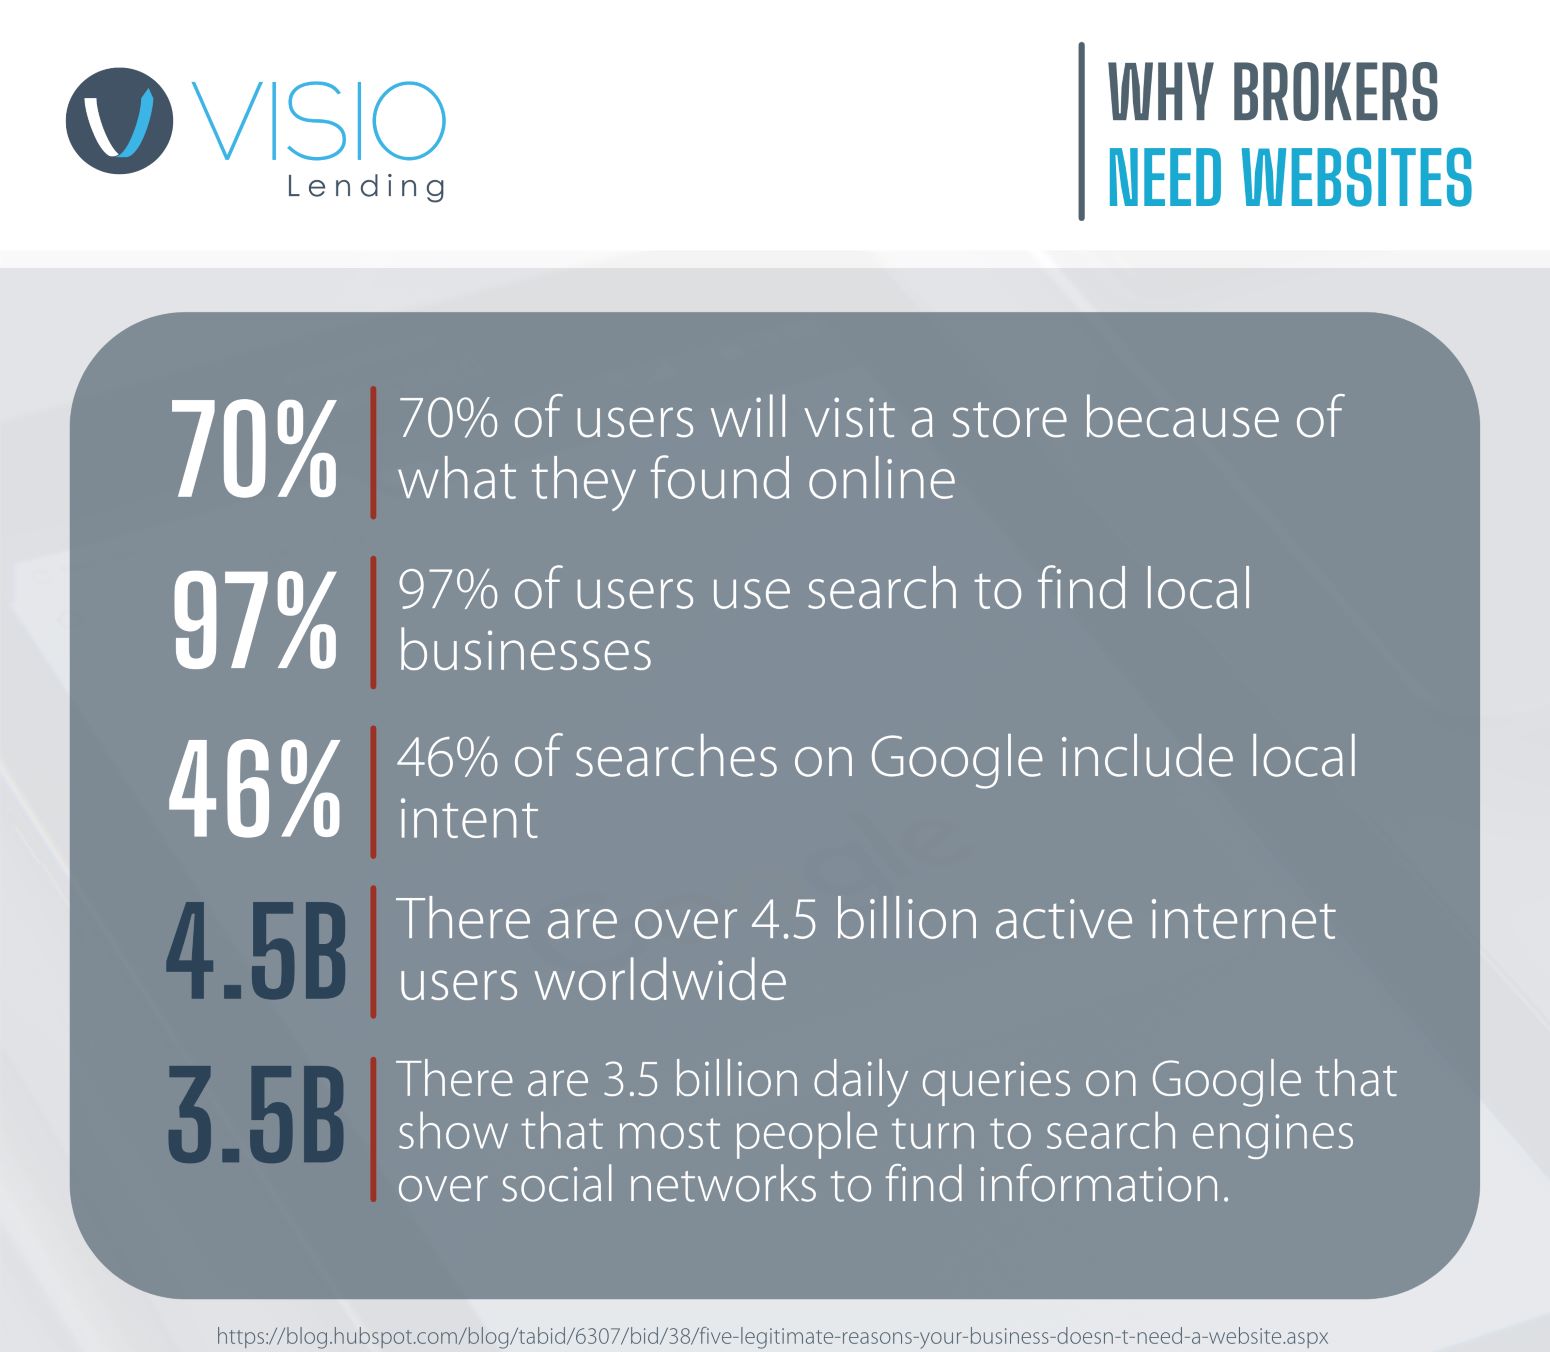 broker websites infographic